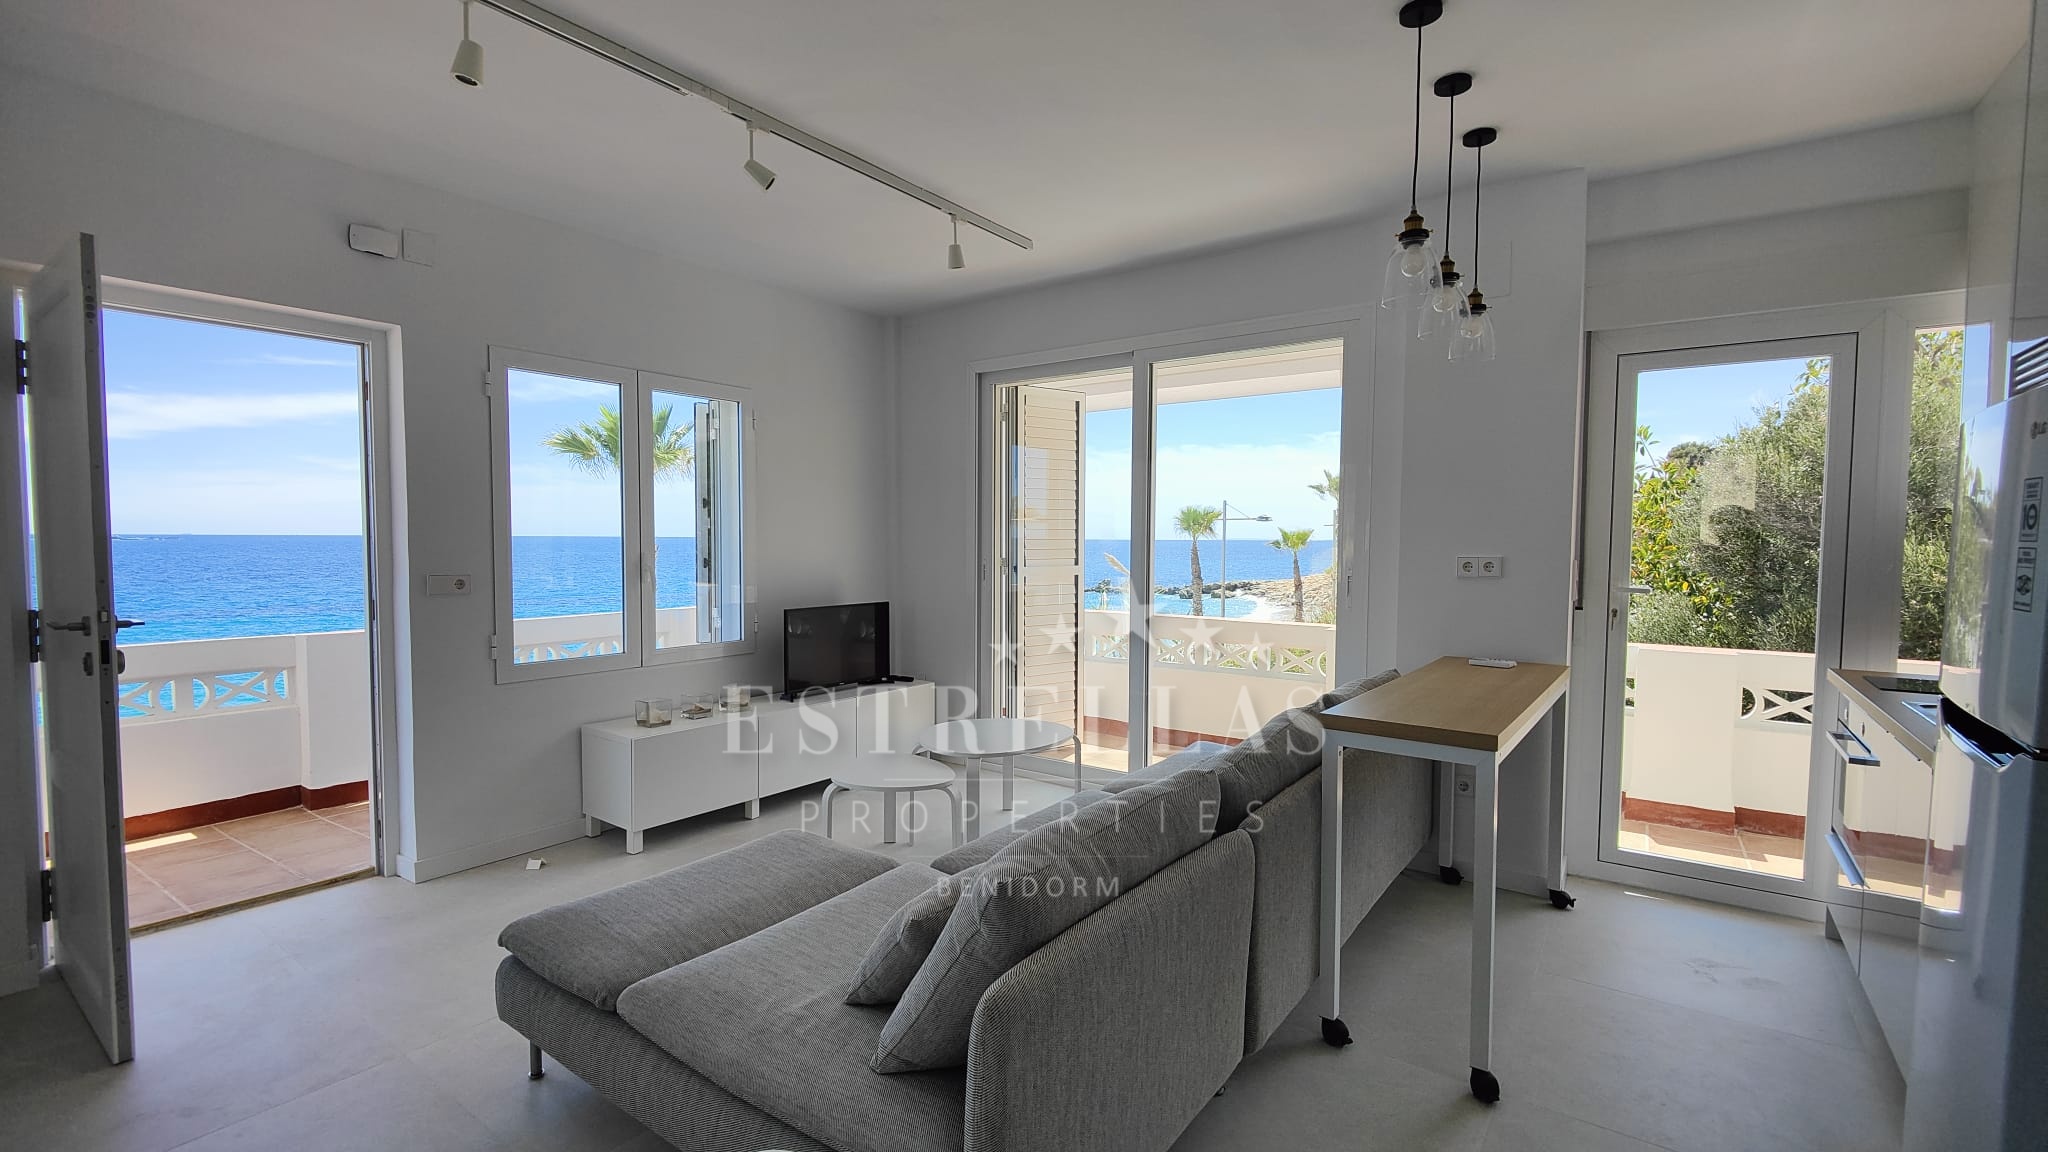 Apartamento REFORMADO en primera línea de playa en Villajoyosa